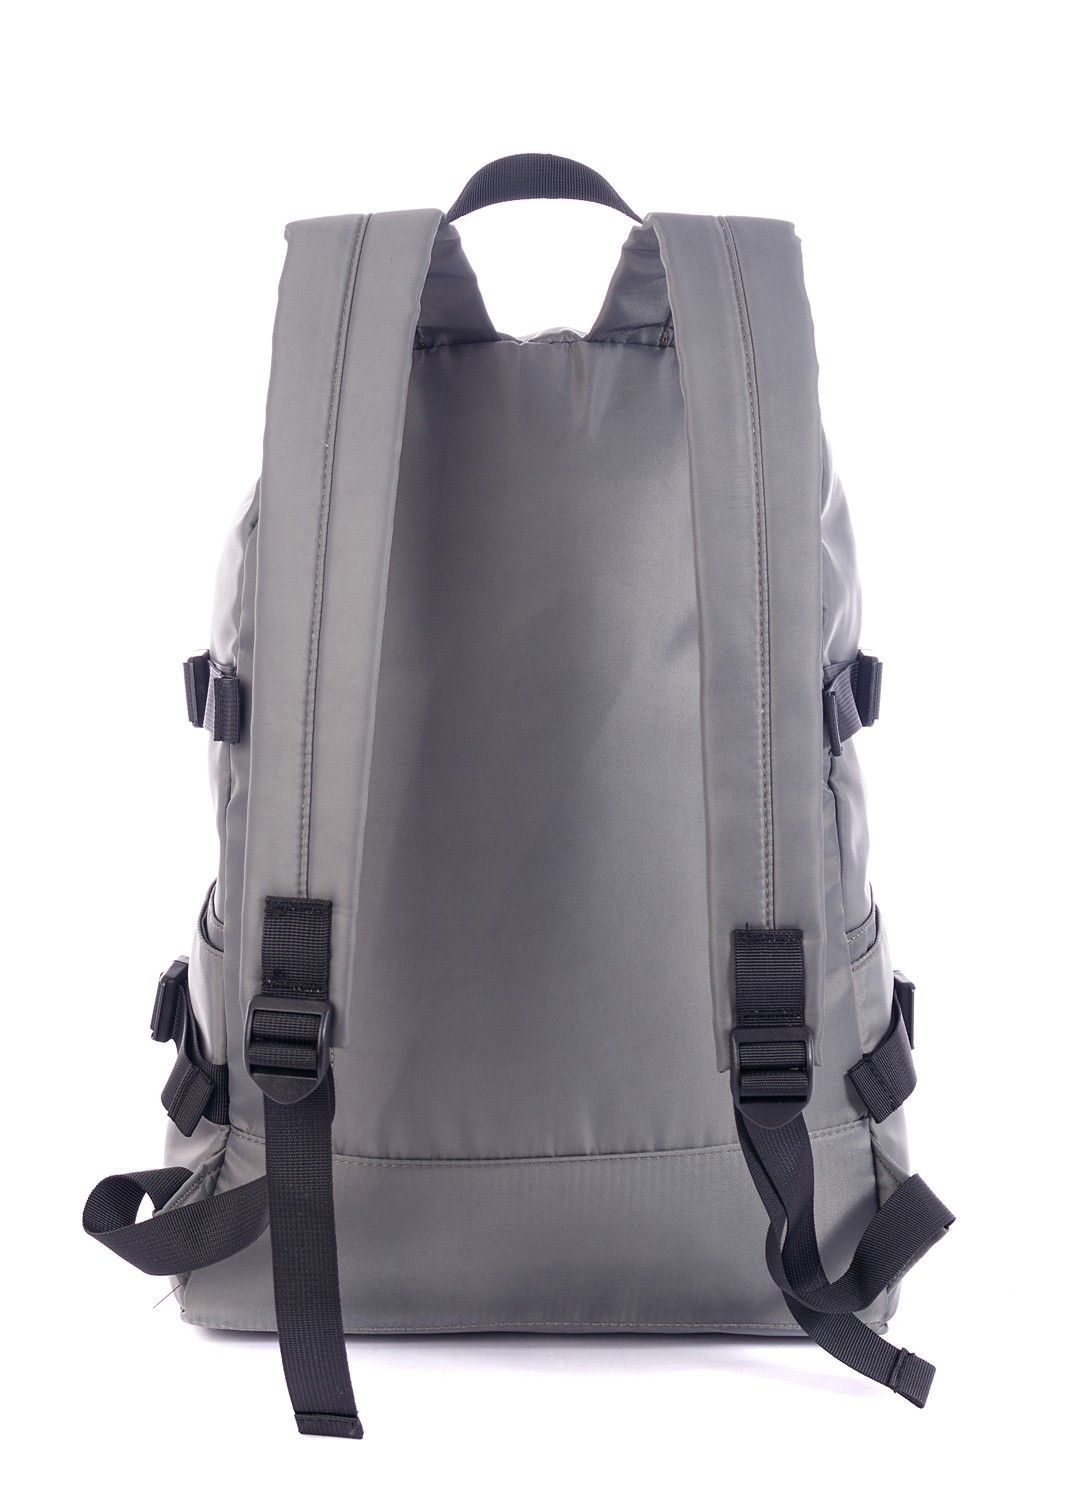 Рюкзак мужской городской, серый однотонный, со стандартными лямками, 25л